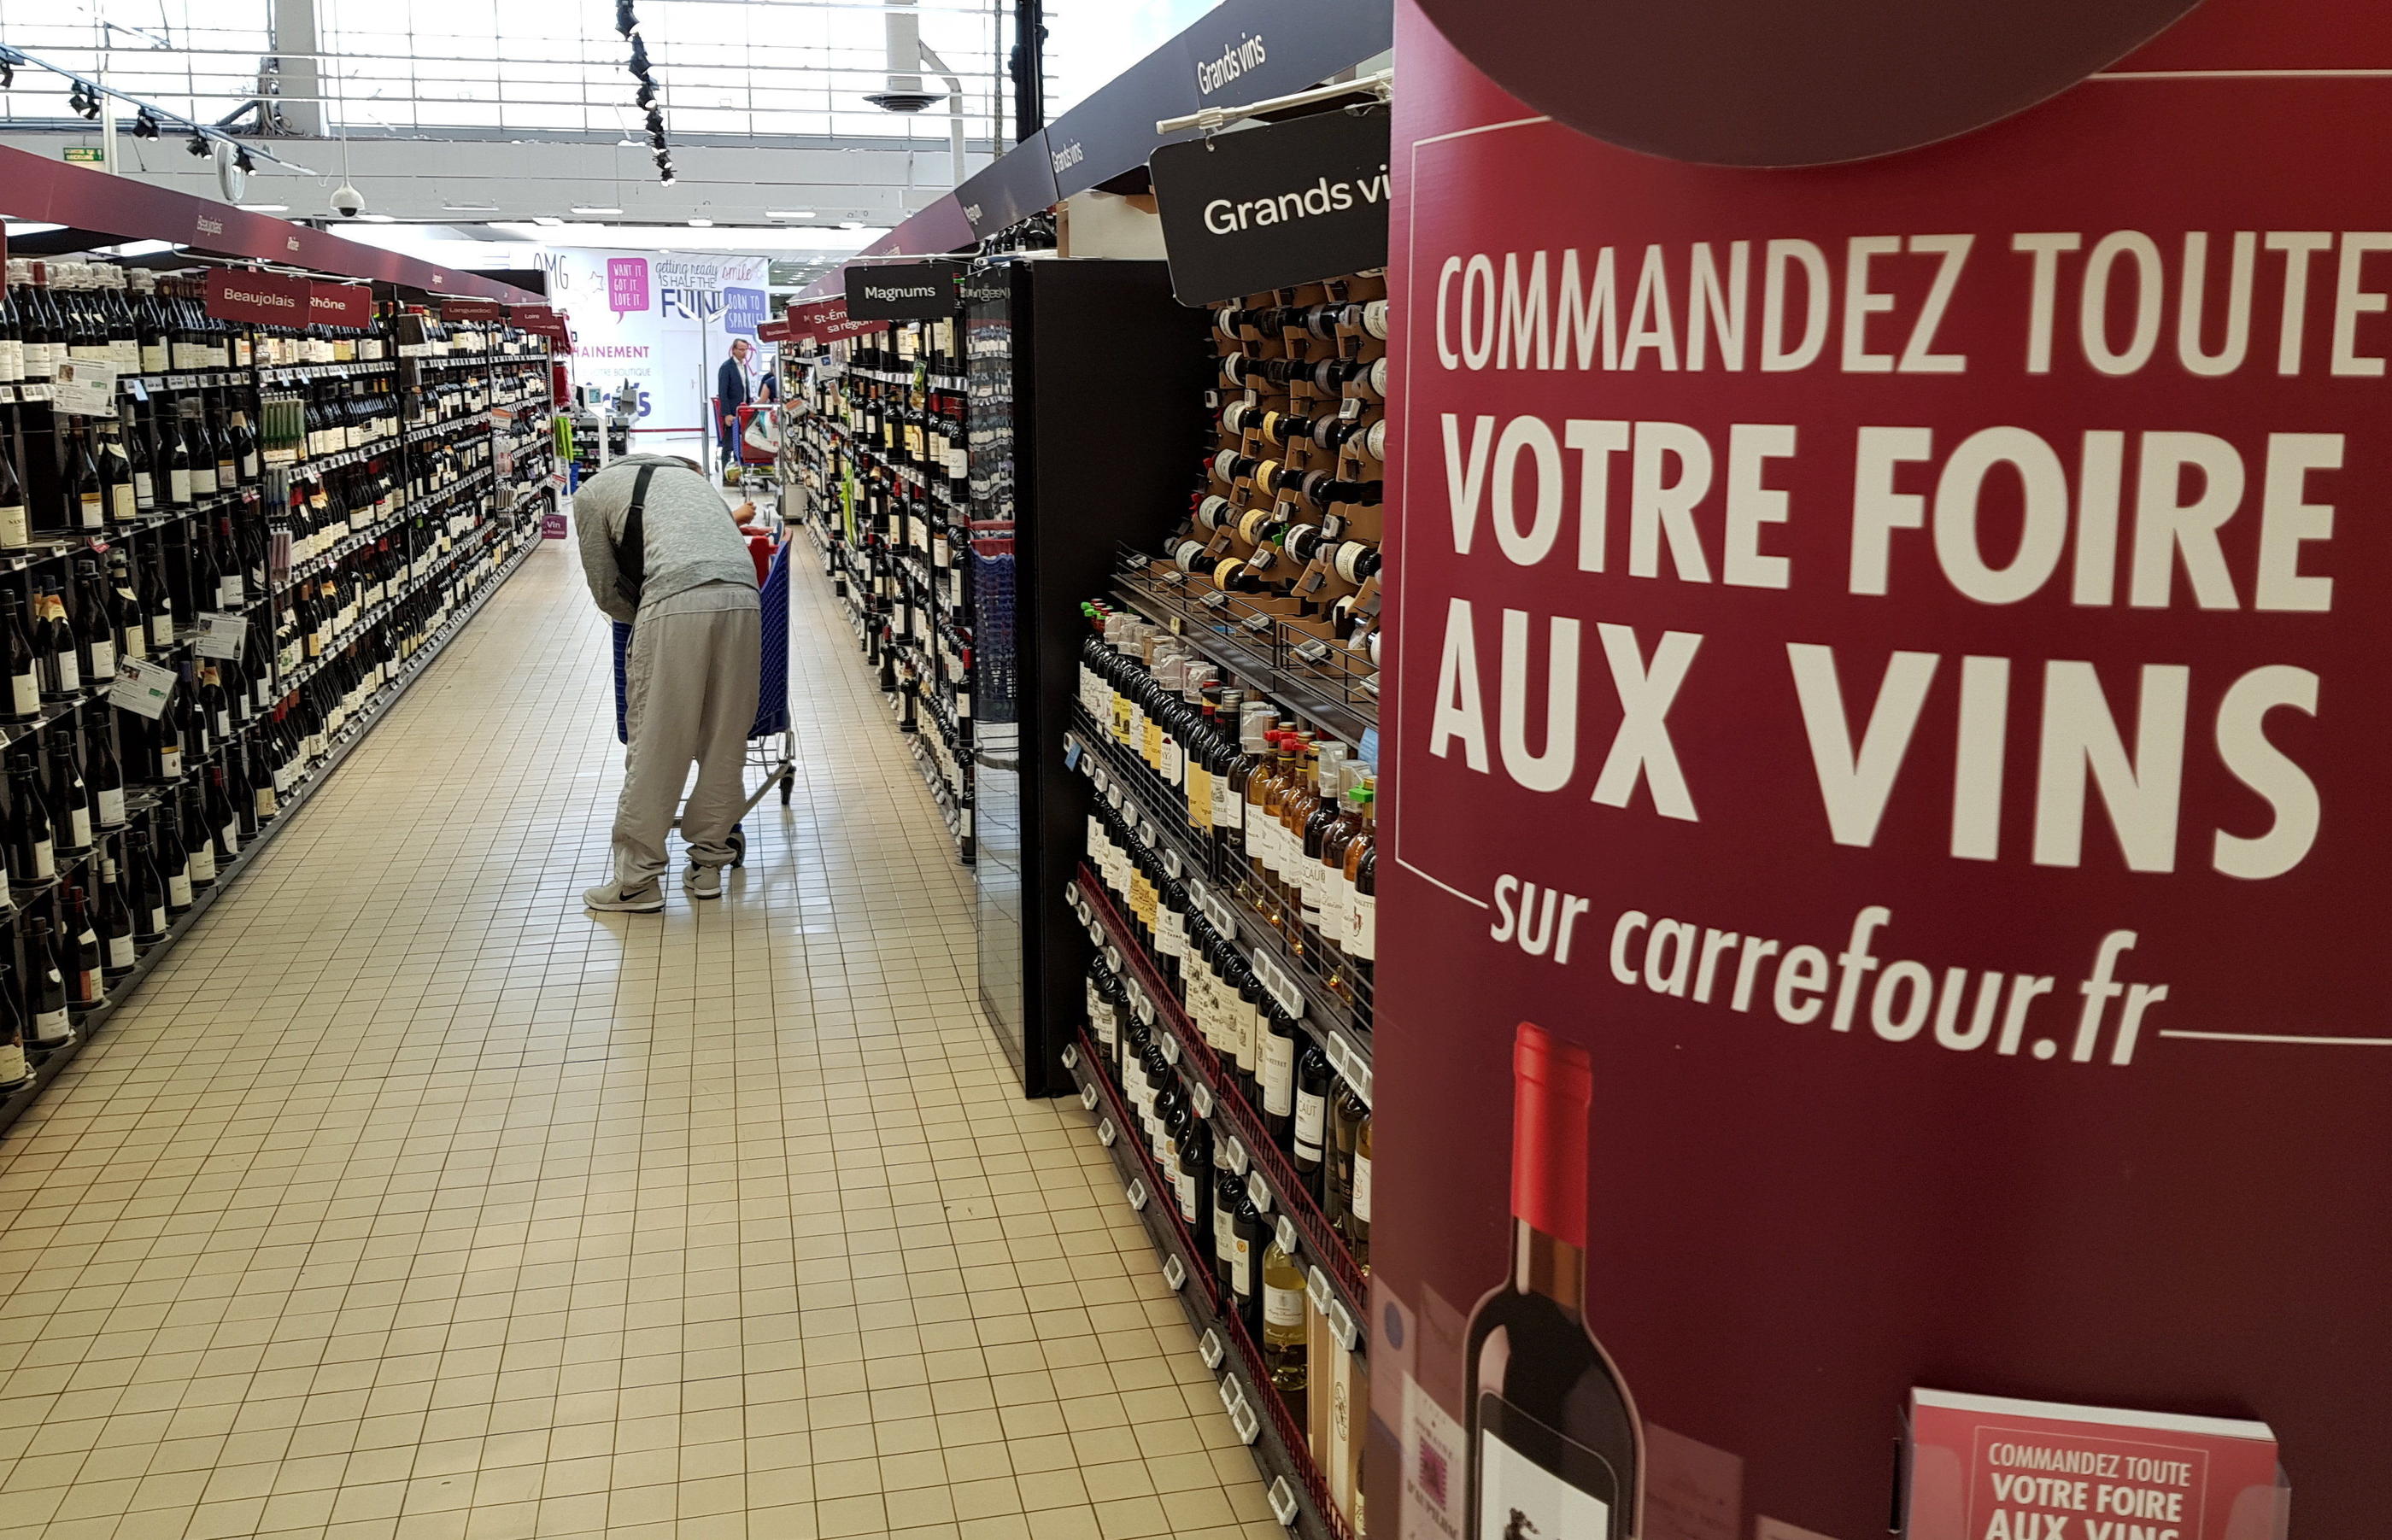 Pour leurs foires aux vins, les grandes enseignes proposent désormais essentiellement des appellations et des vins entre 5 et 10 euros. LP/Arnaud Journois